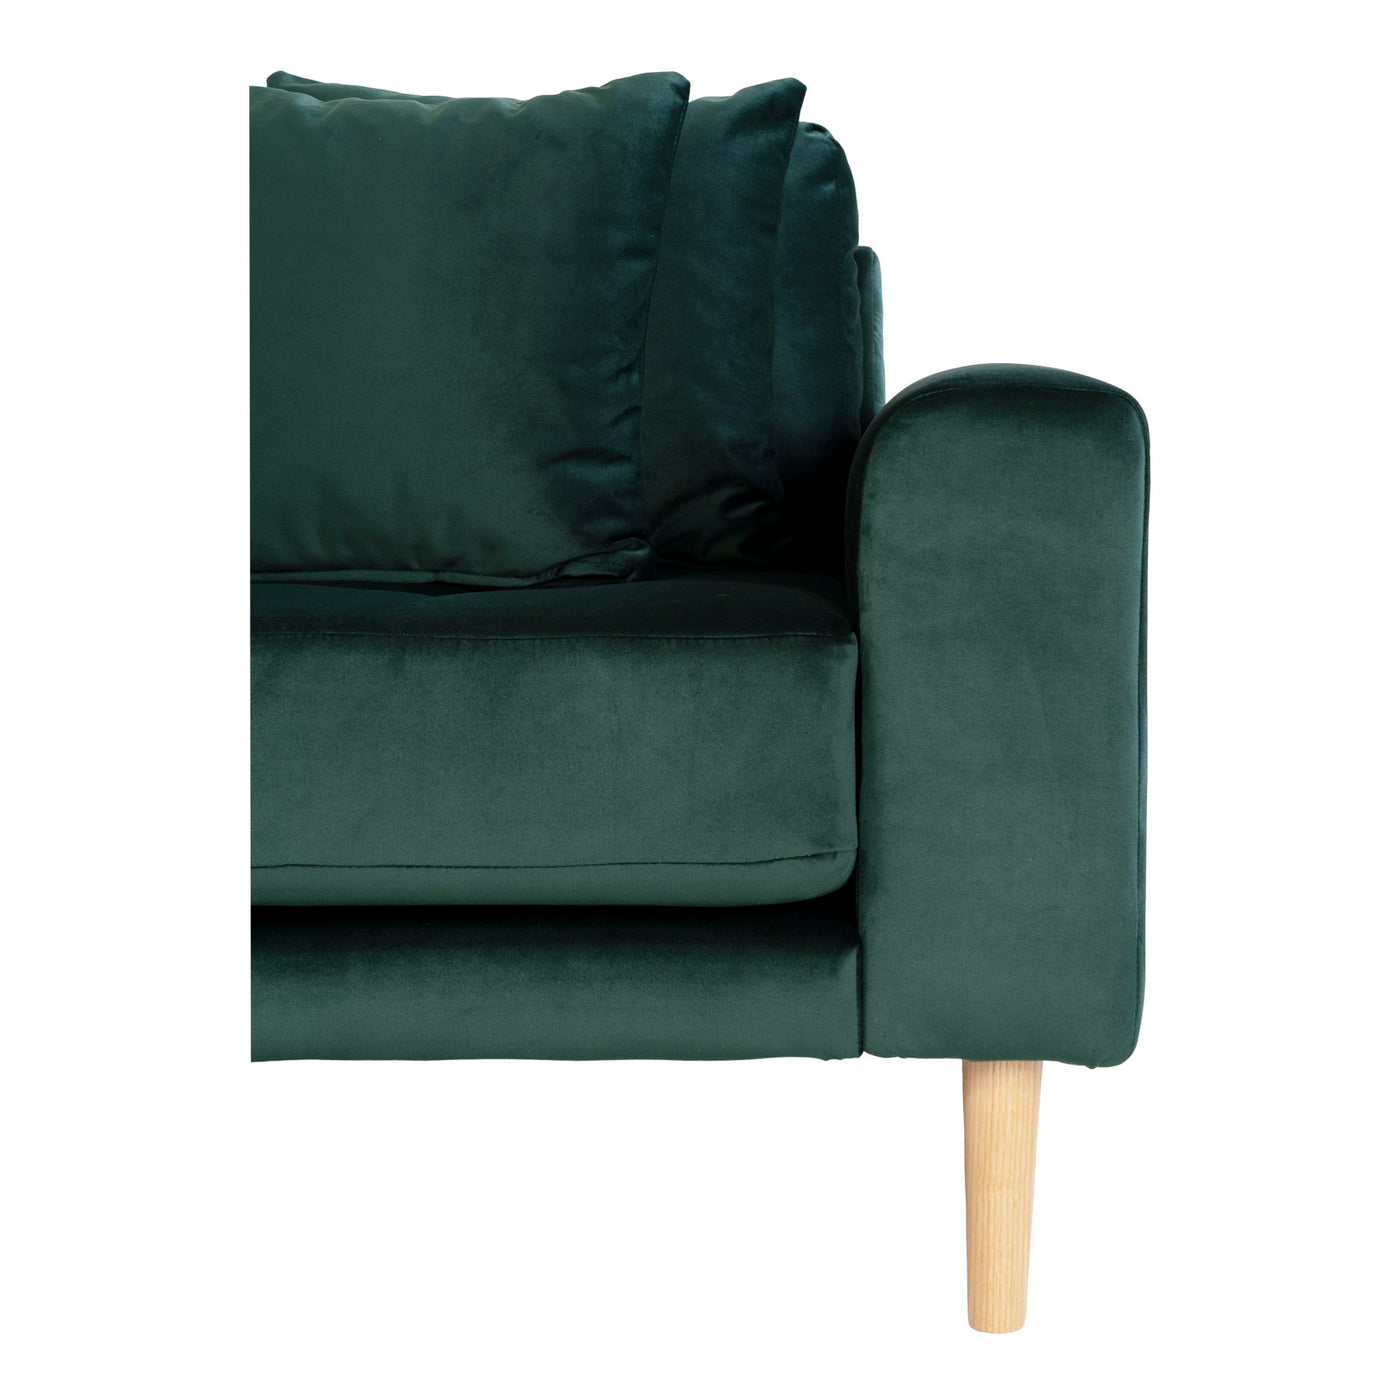 Venedig XL | Chaiselong sofa